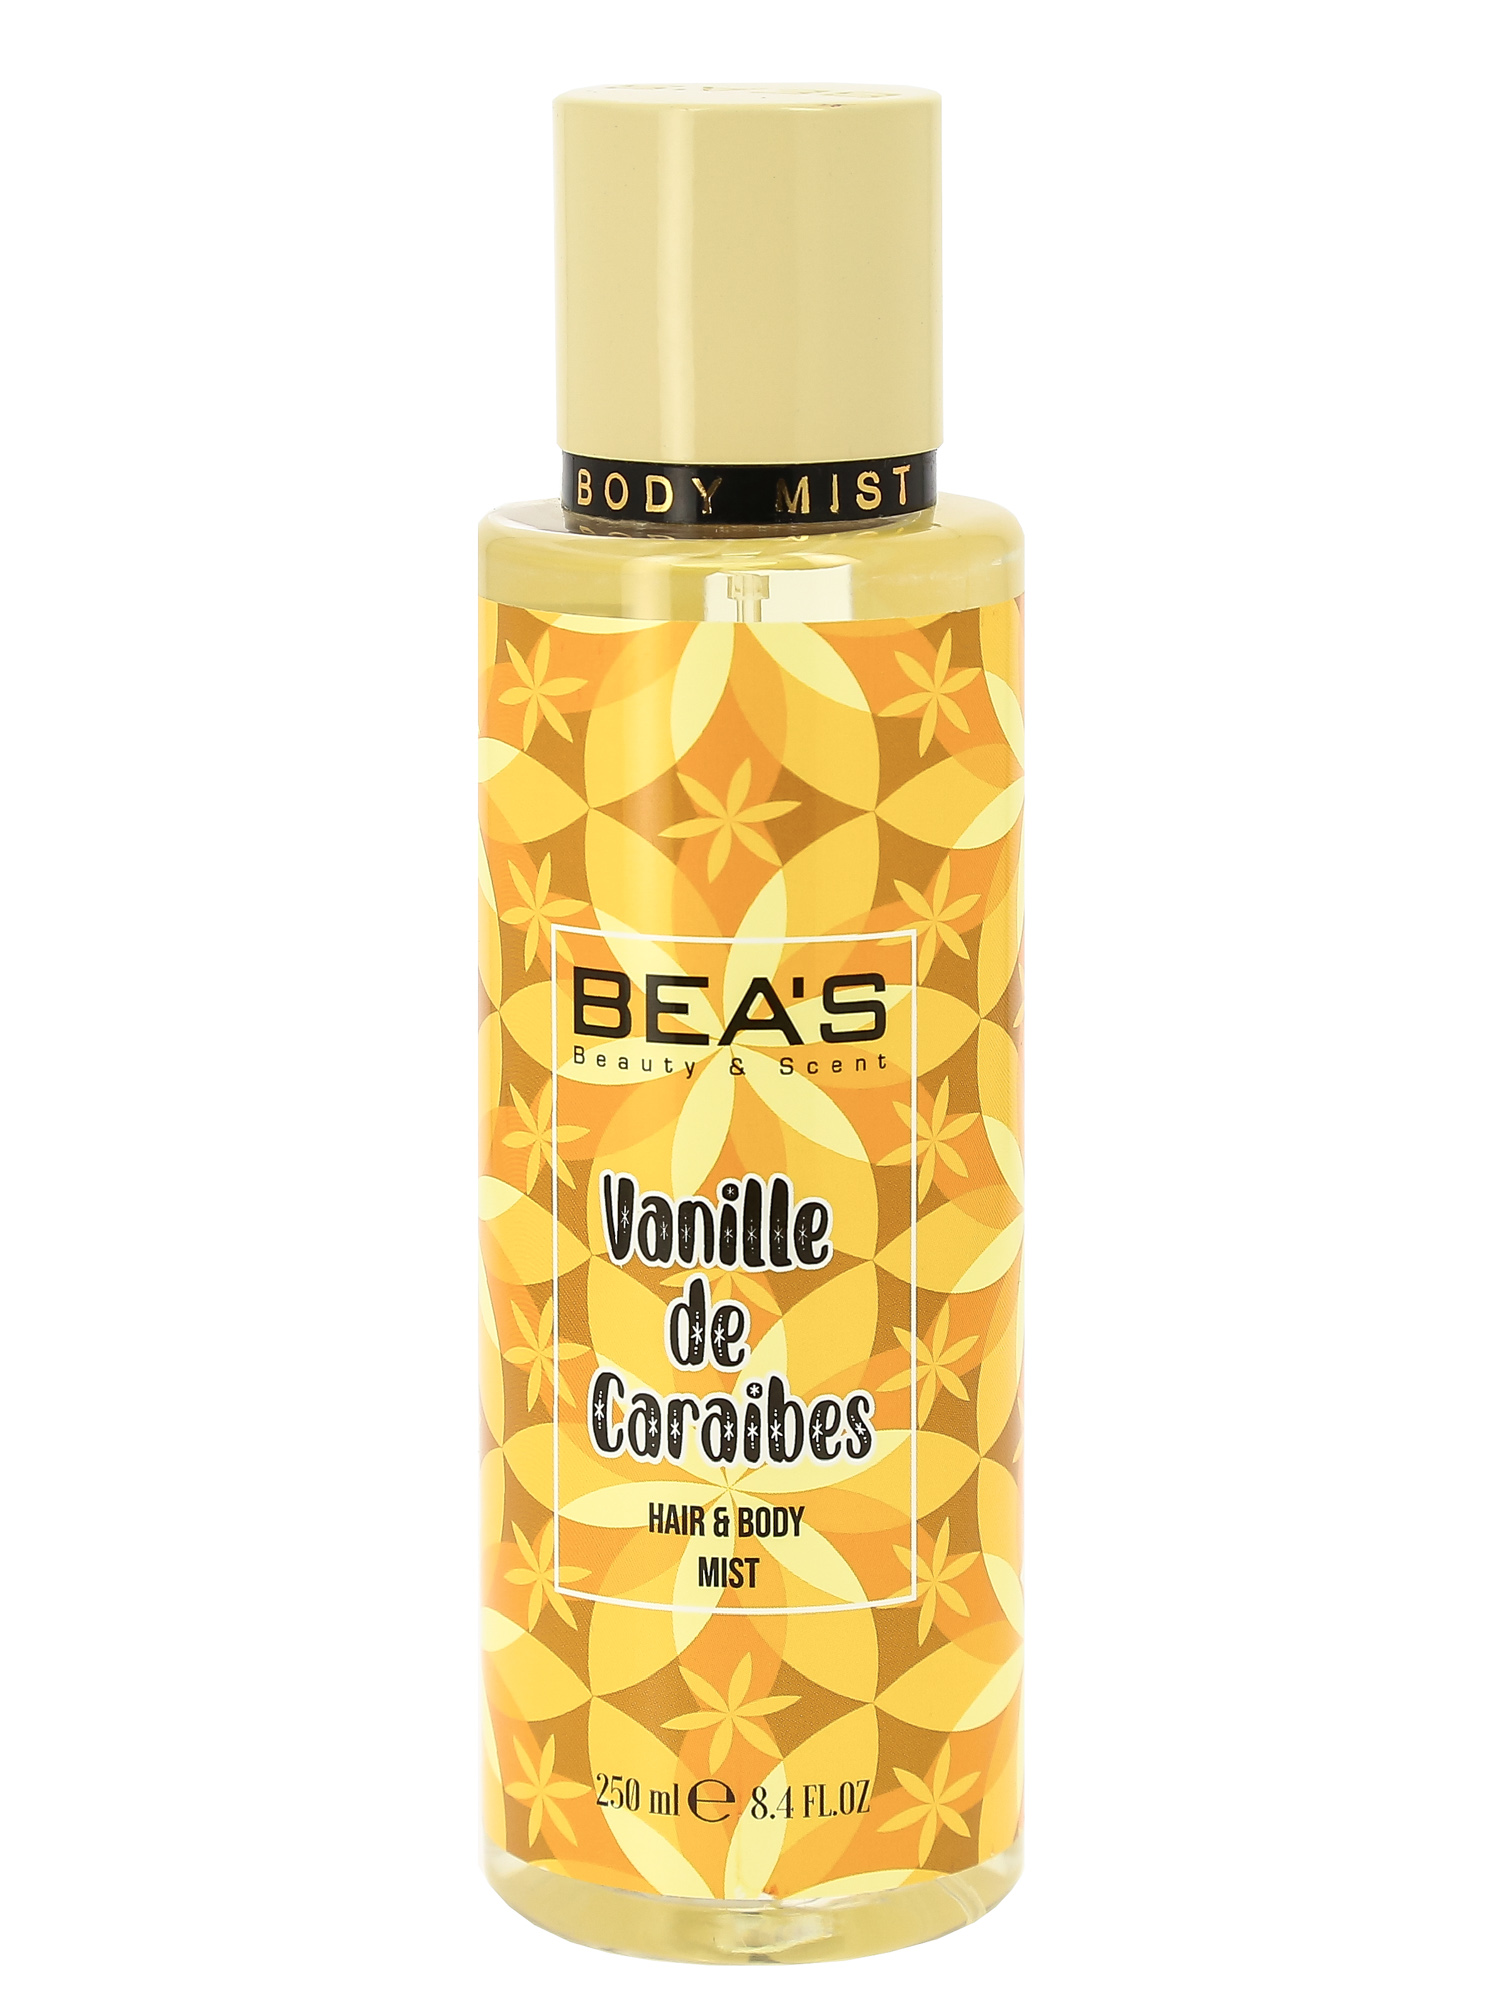 BEA'S VANILLE DE CARAIBES HAIR & BODY MIST